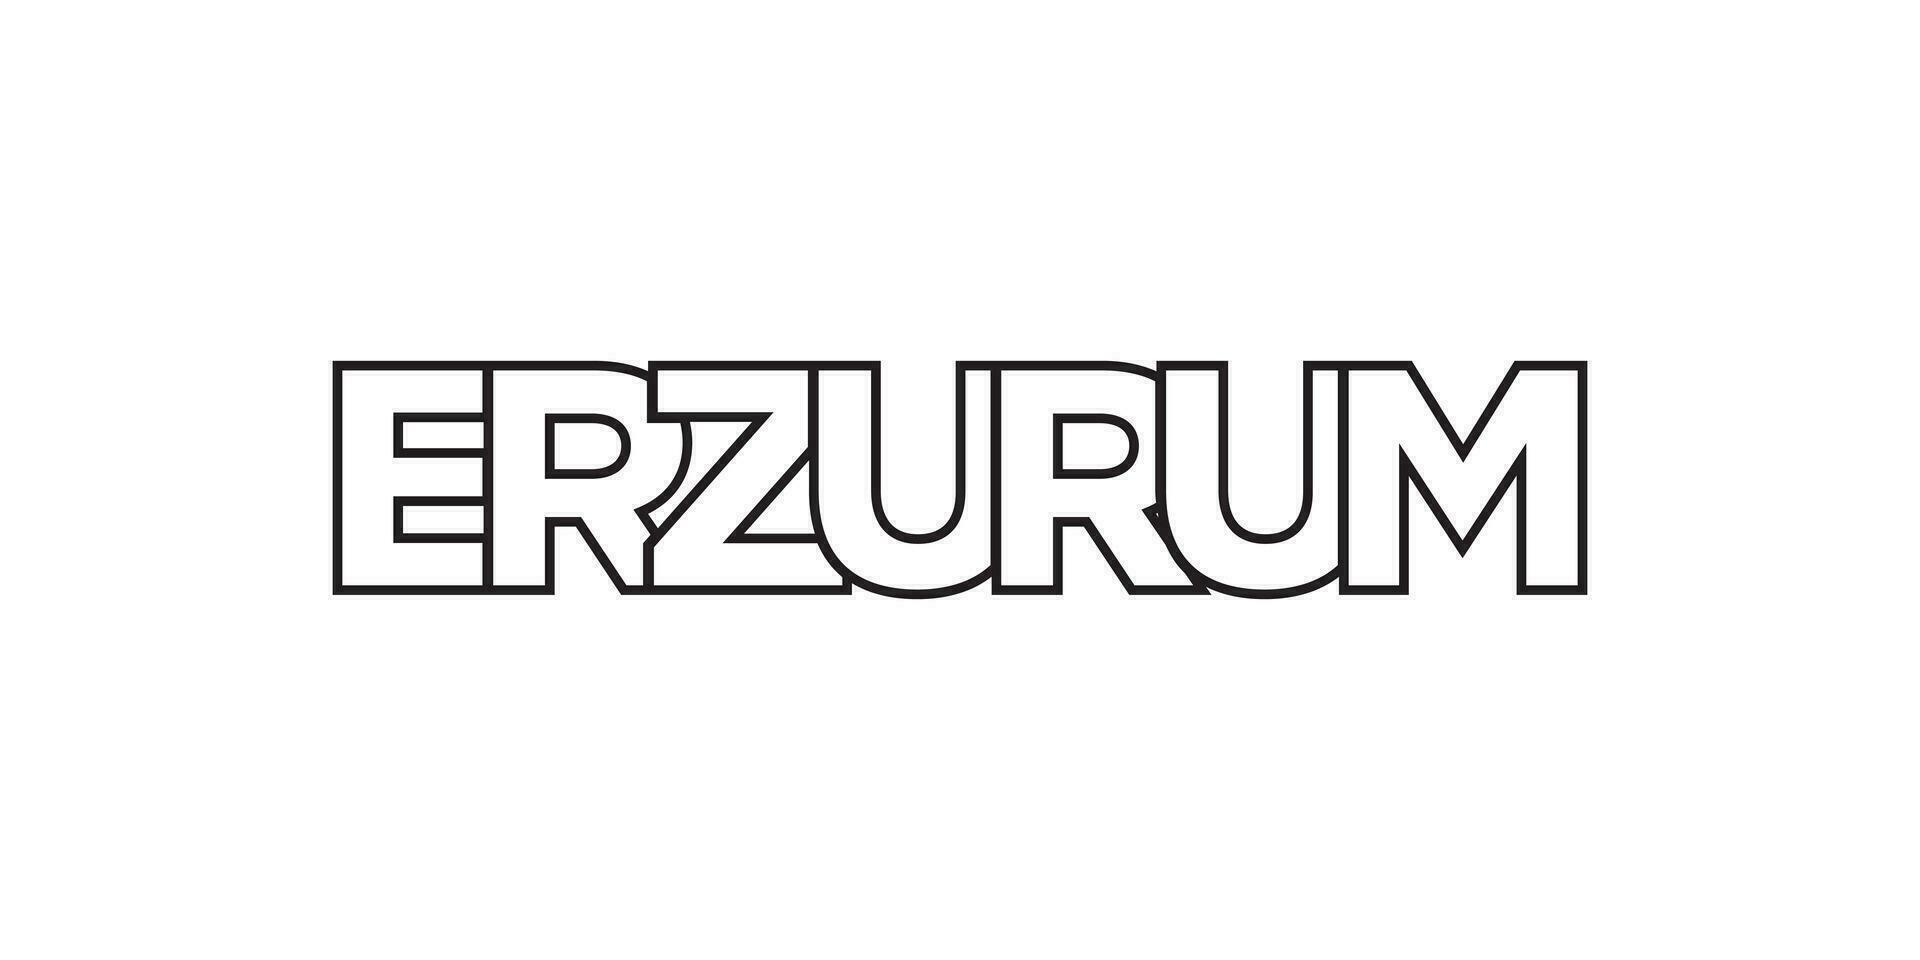 erzurum en el Turquía emblema. el diseño caracteristicas un geométrico estilo, vector ilustración con negrita tipografía en un moderno fuente. el gráfico eslogan letras.